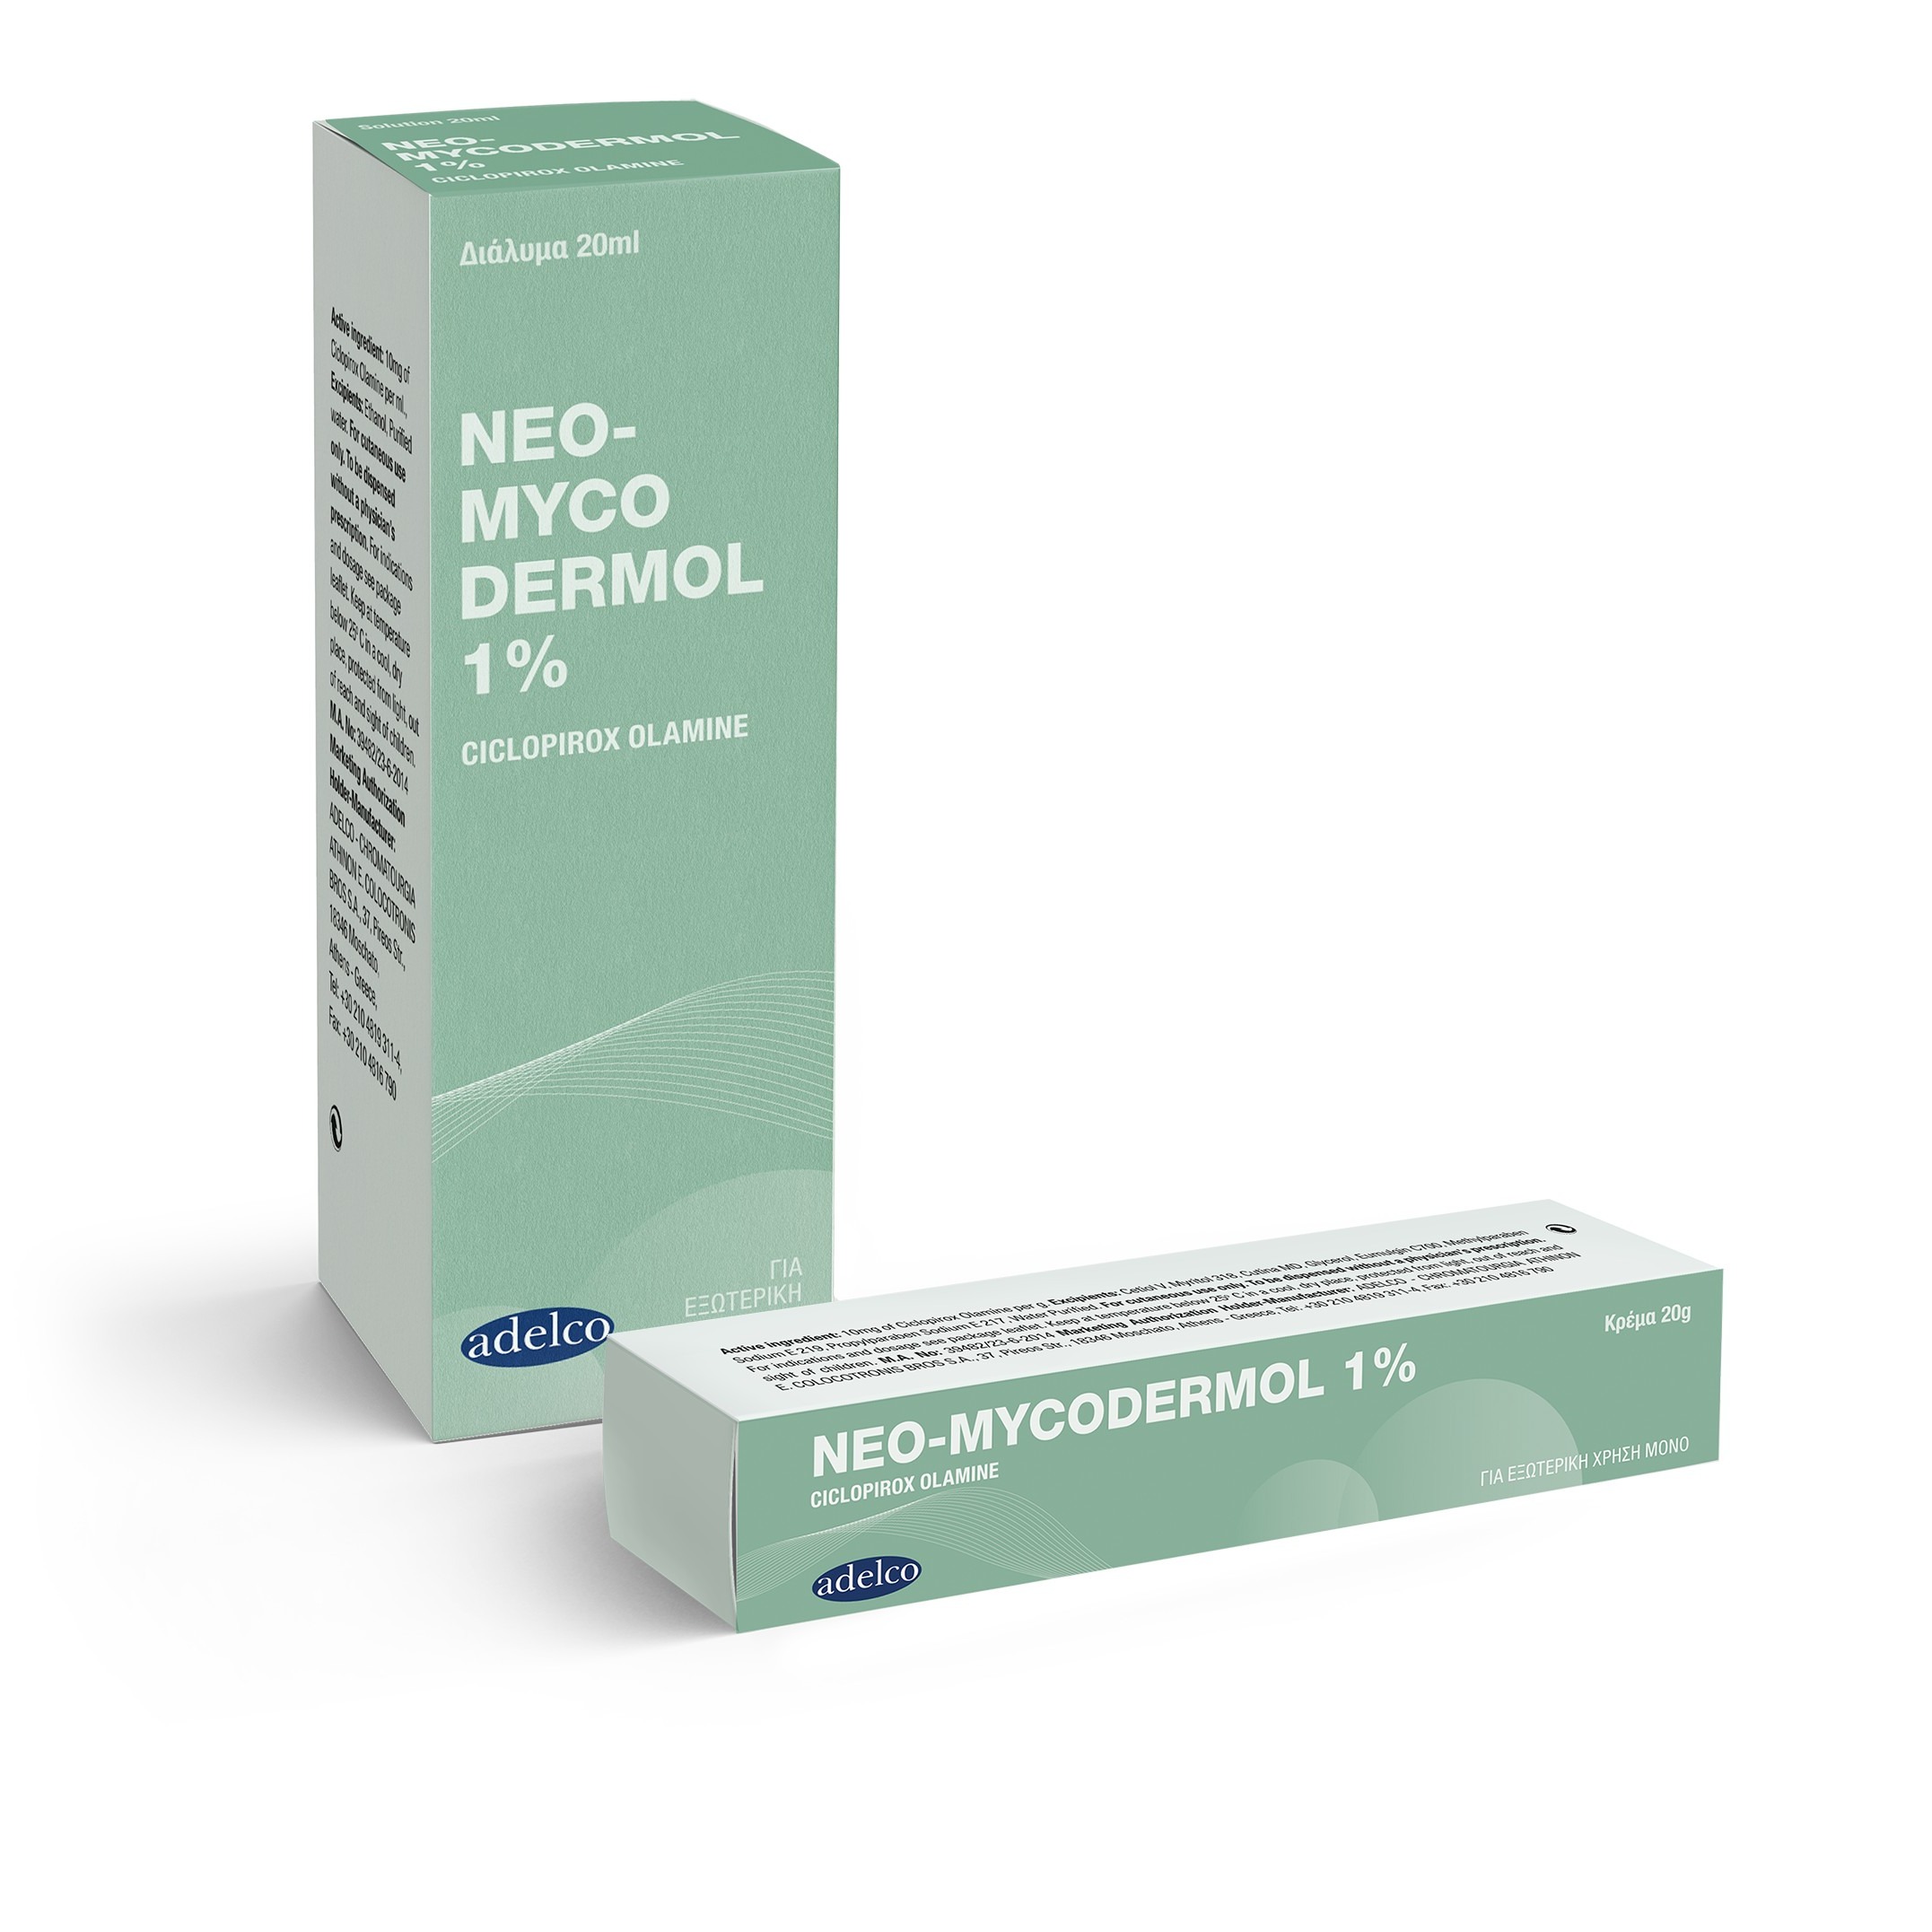 Neomycodermol cream - Ciclopirox Olamine